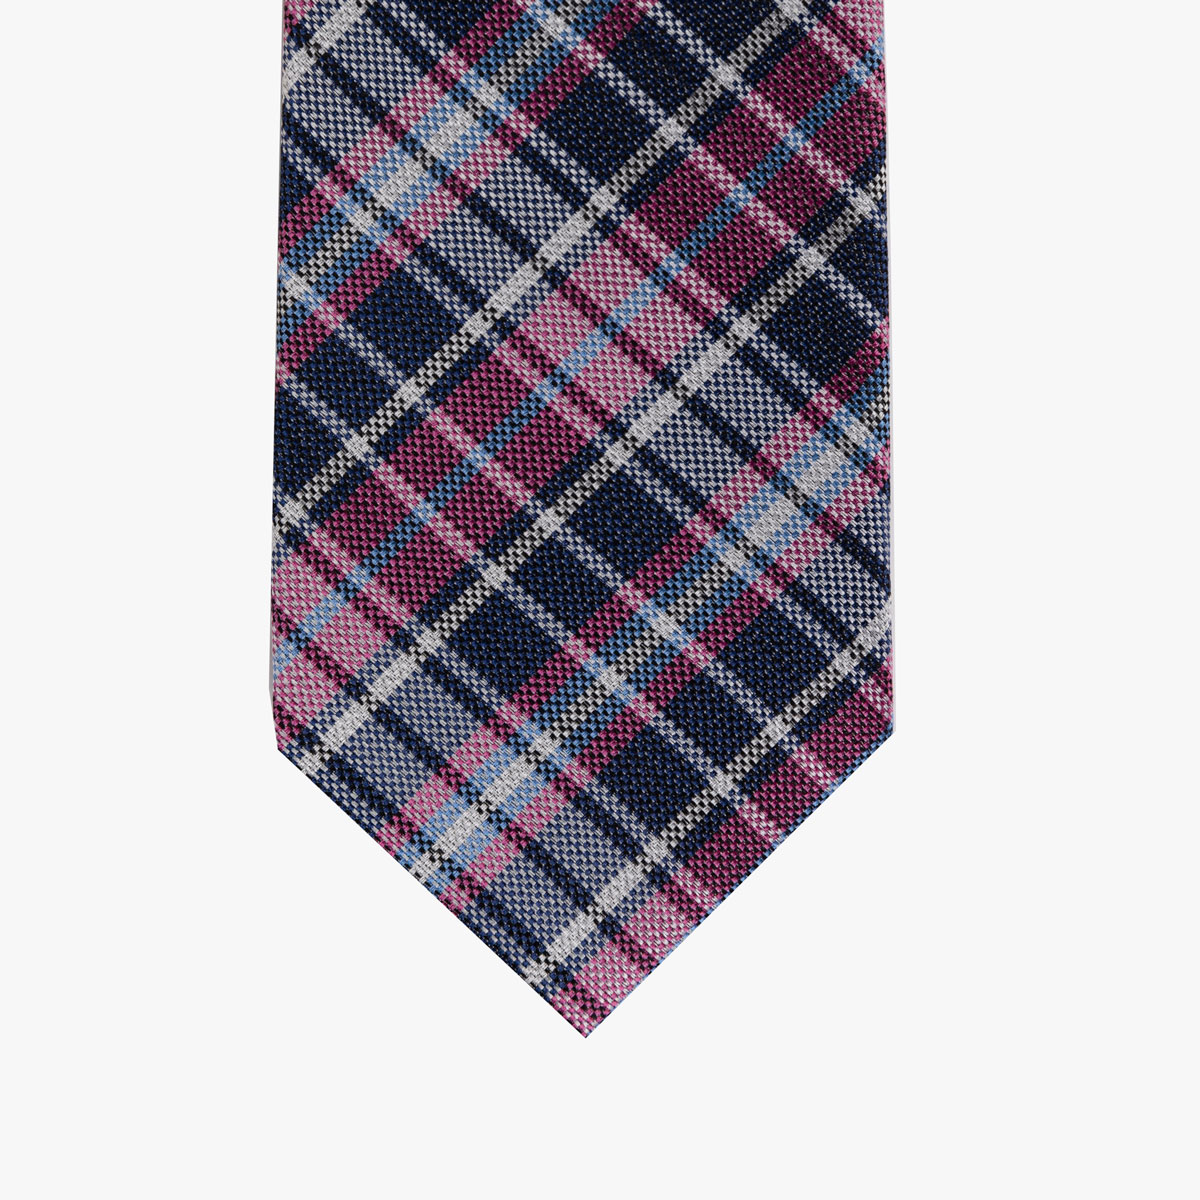 Krawatte mit Karo Muster in blau pink